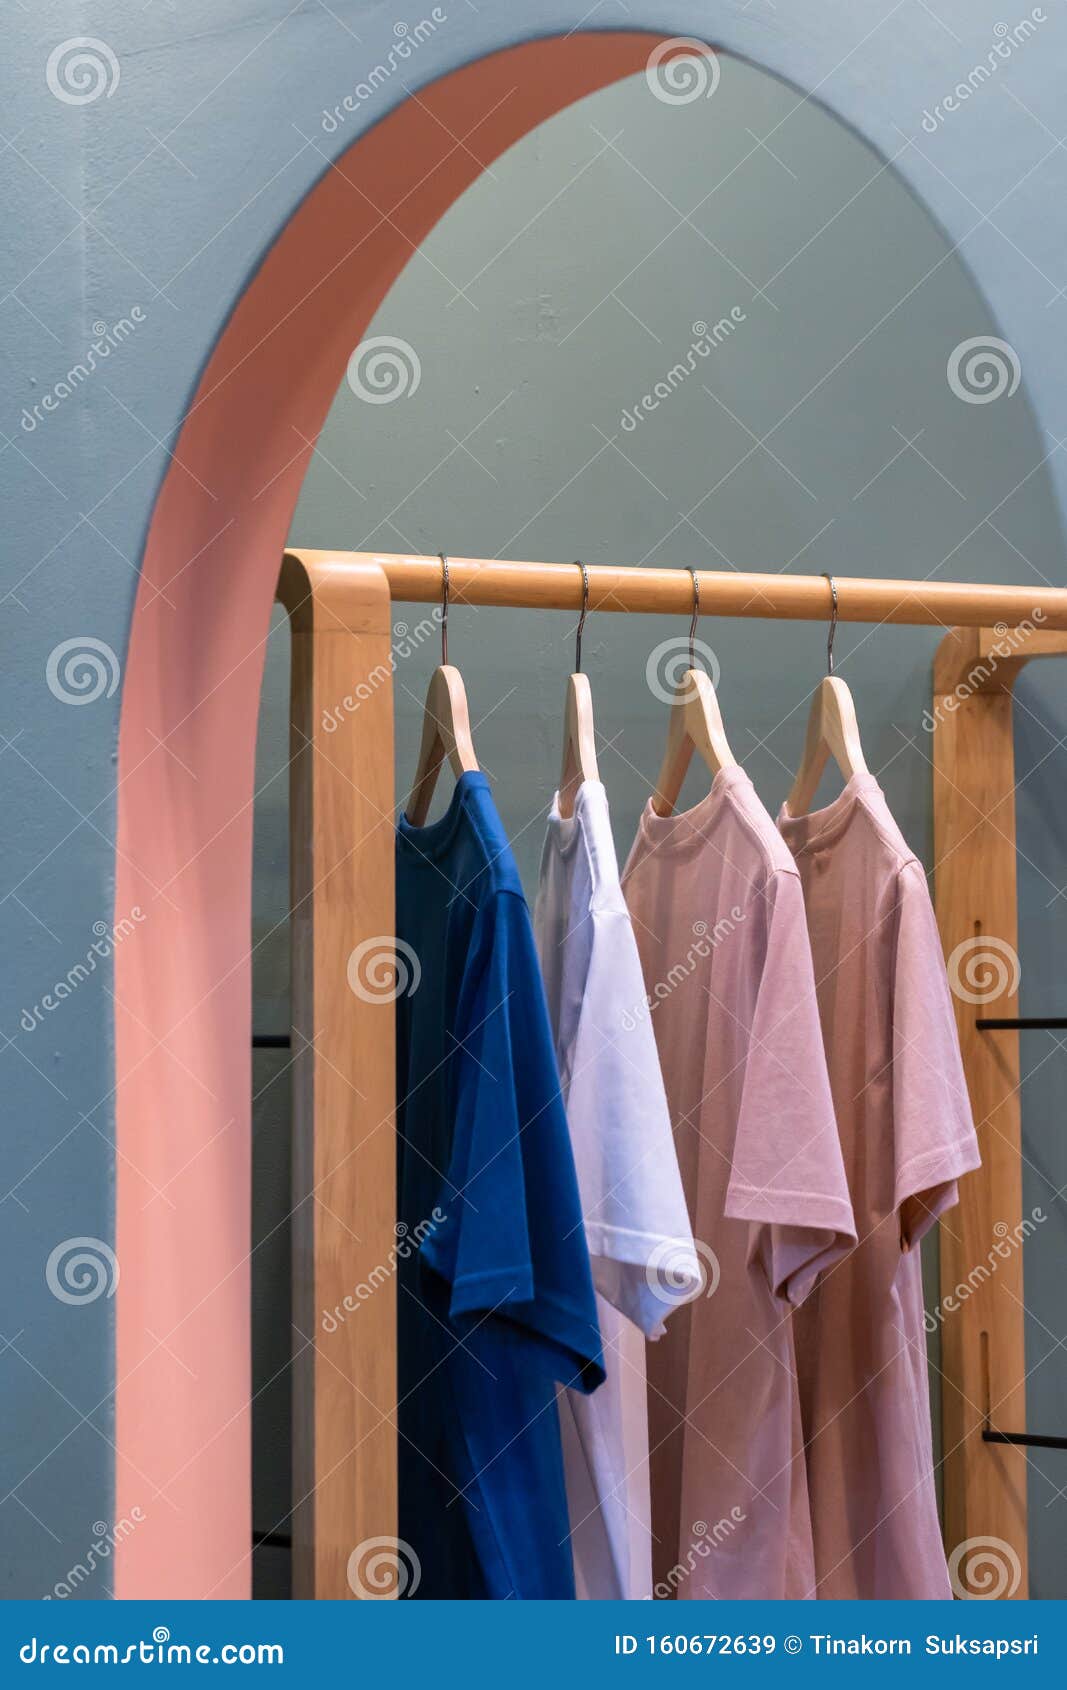 Camisas Colgando En Un Tendedero Imagen de archivo - Imagen de sitio: 160672639